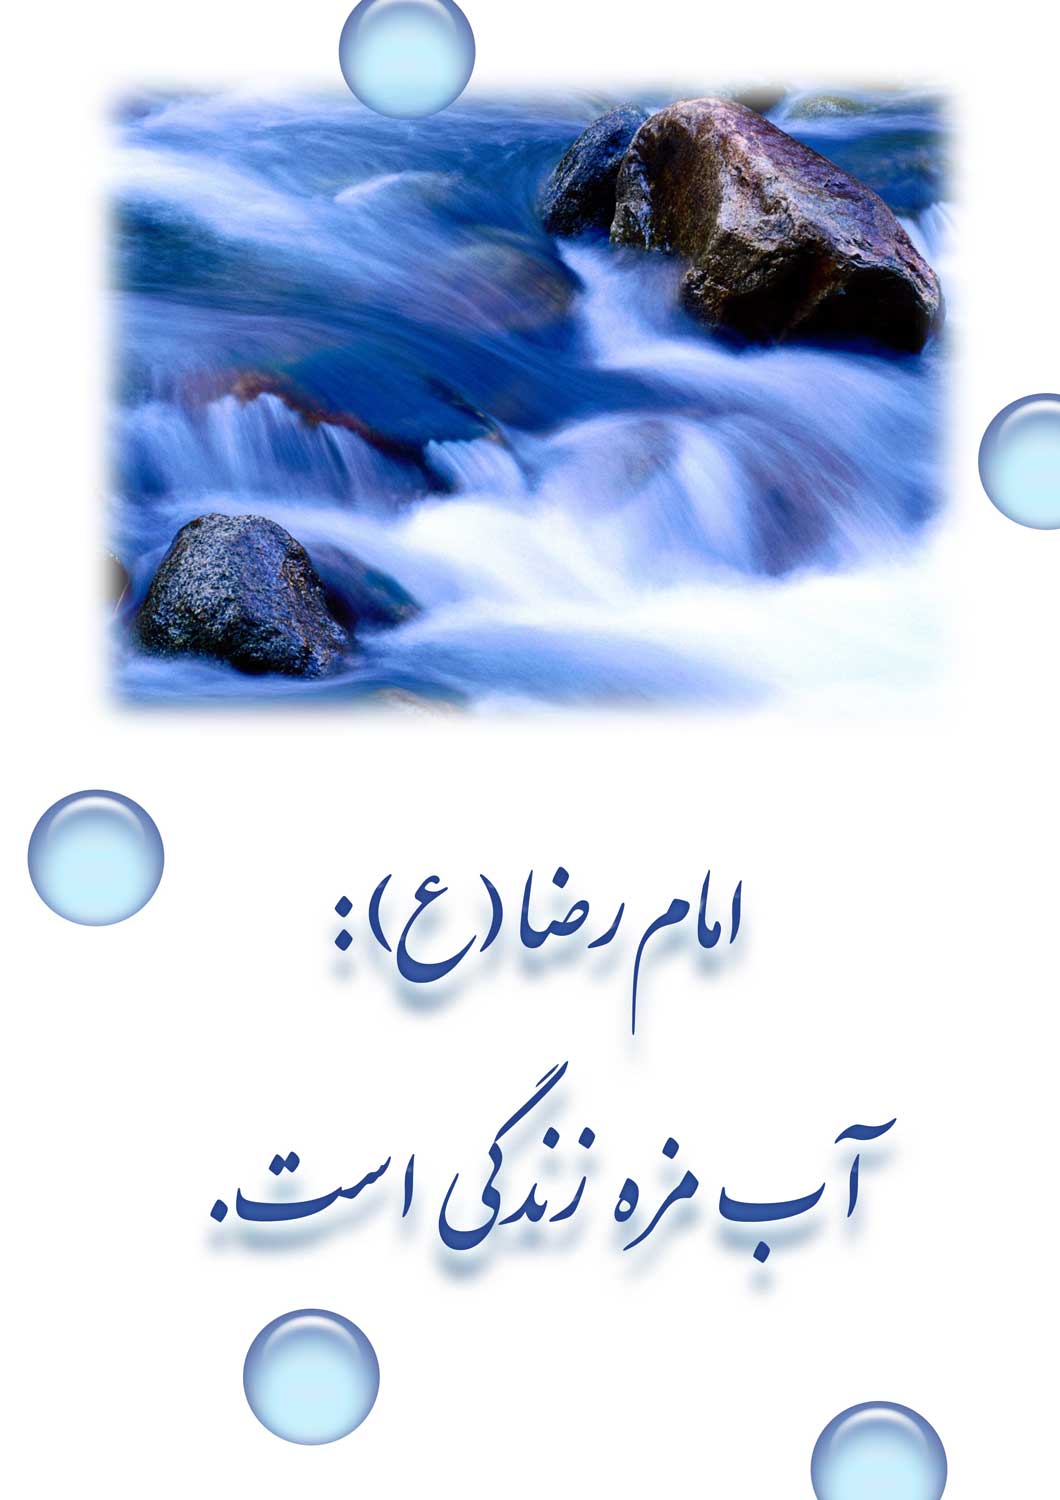 نمایه نظریه و رهنمود حضرت امام رضا سلام الله علیه در رابطه با آب و مزۀ زندگی